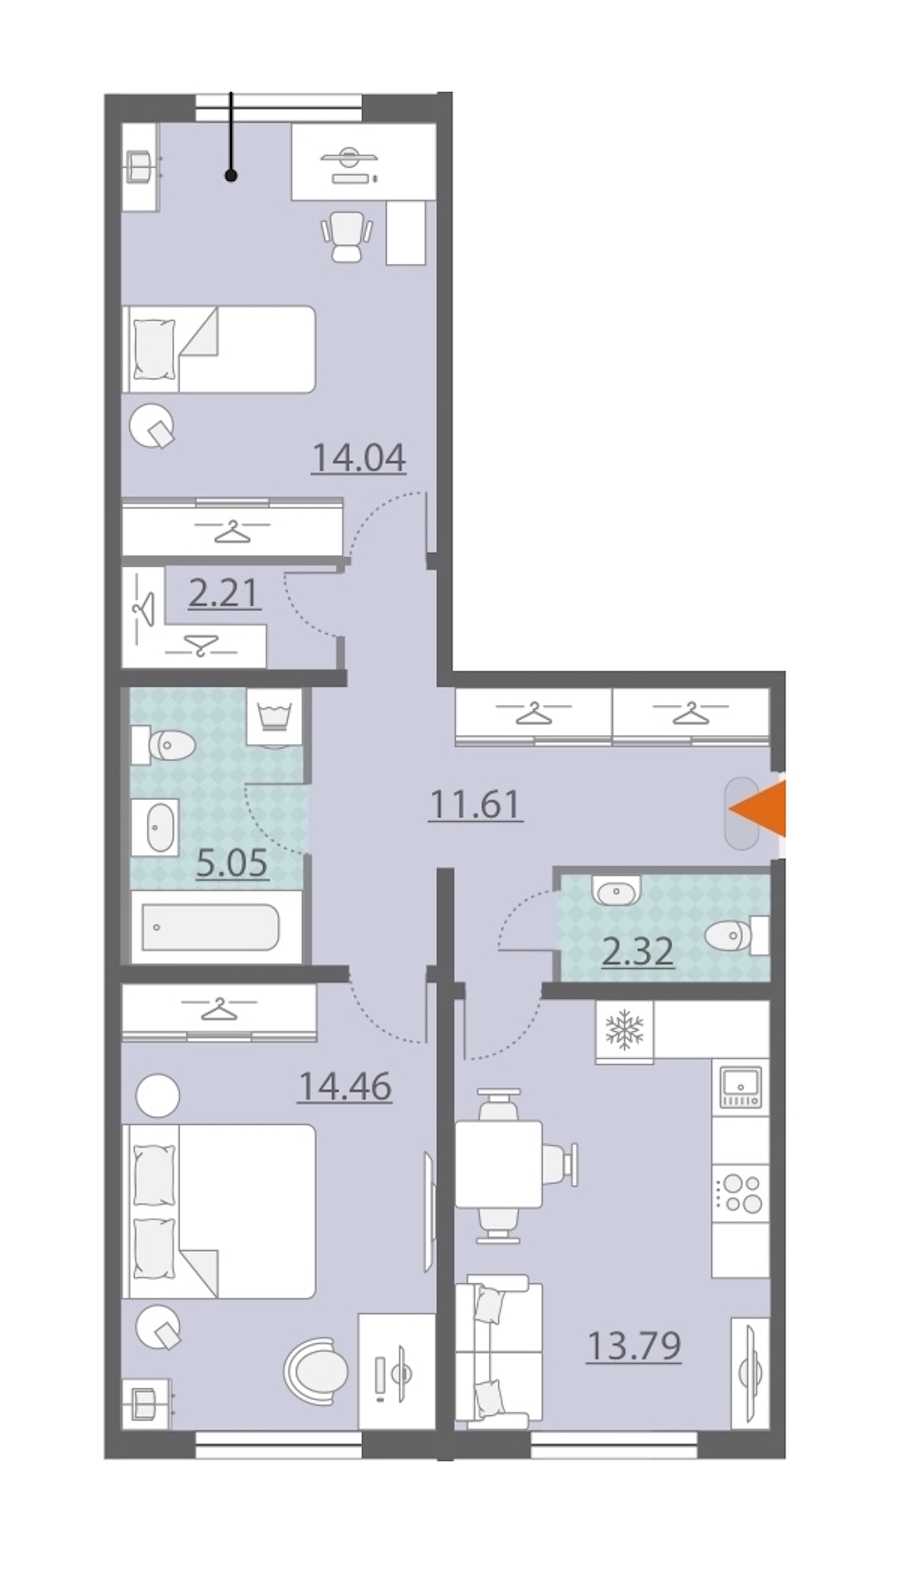 Двухкомнатная квартира в : площадь 63.51 м2 , этаж: 1 – купить в Санкт-Петербурге